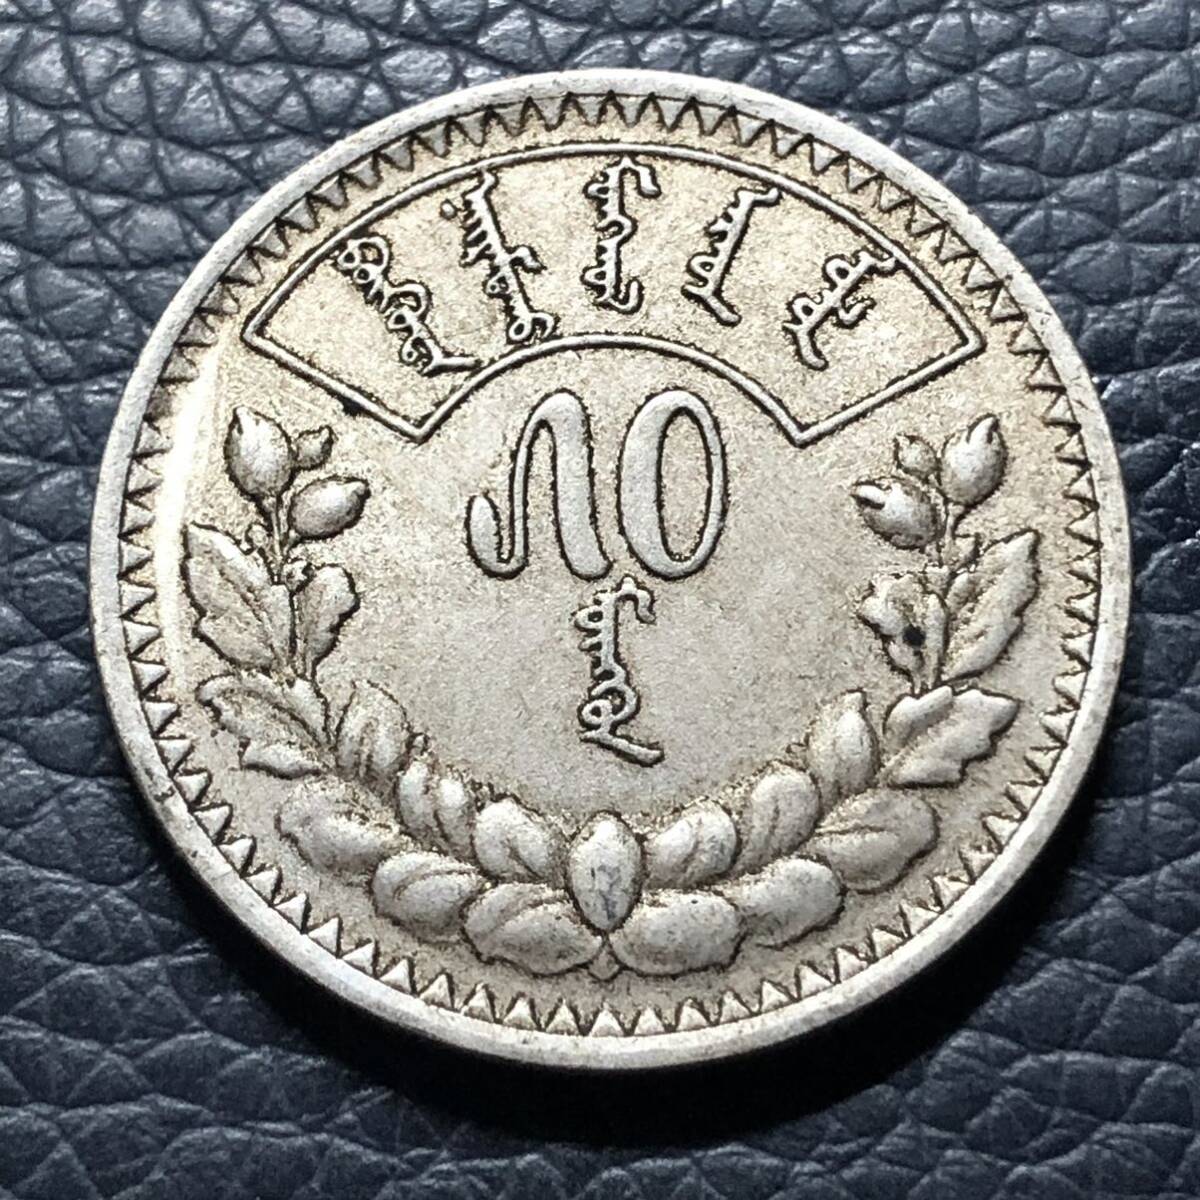  foreign old coin mongorutugruk silver coin trade silver small size silver coin trade silver old .